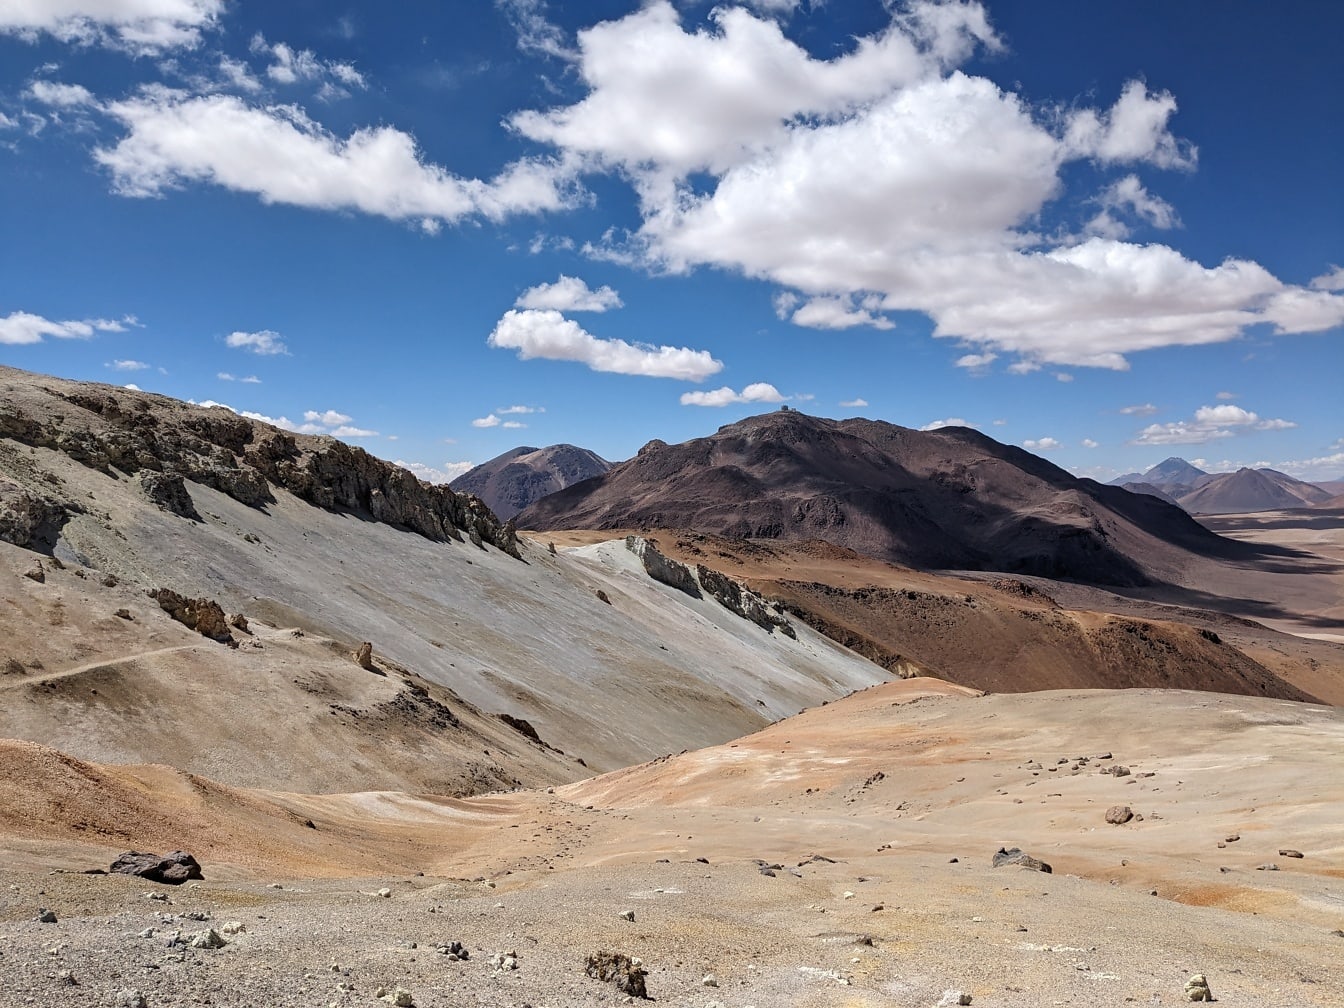 Incredibile paesaggio di un deserto arido ad alta quota sull’altopiano peruviano